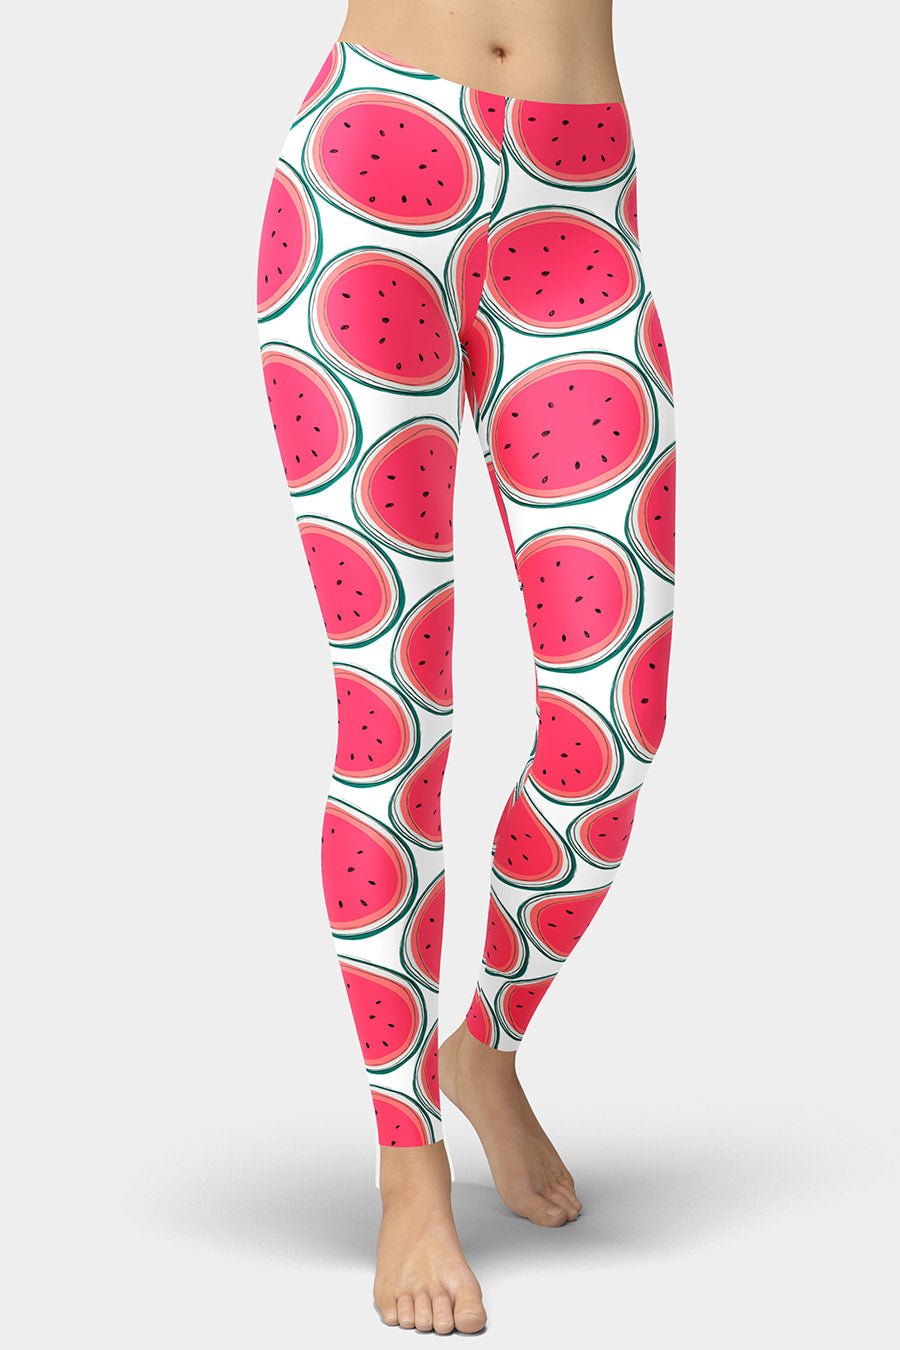 Watermelon Slices Leggings - SeeMyLeggings